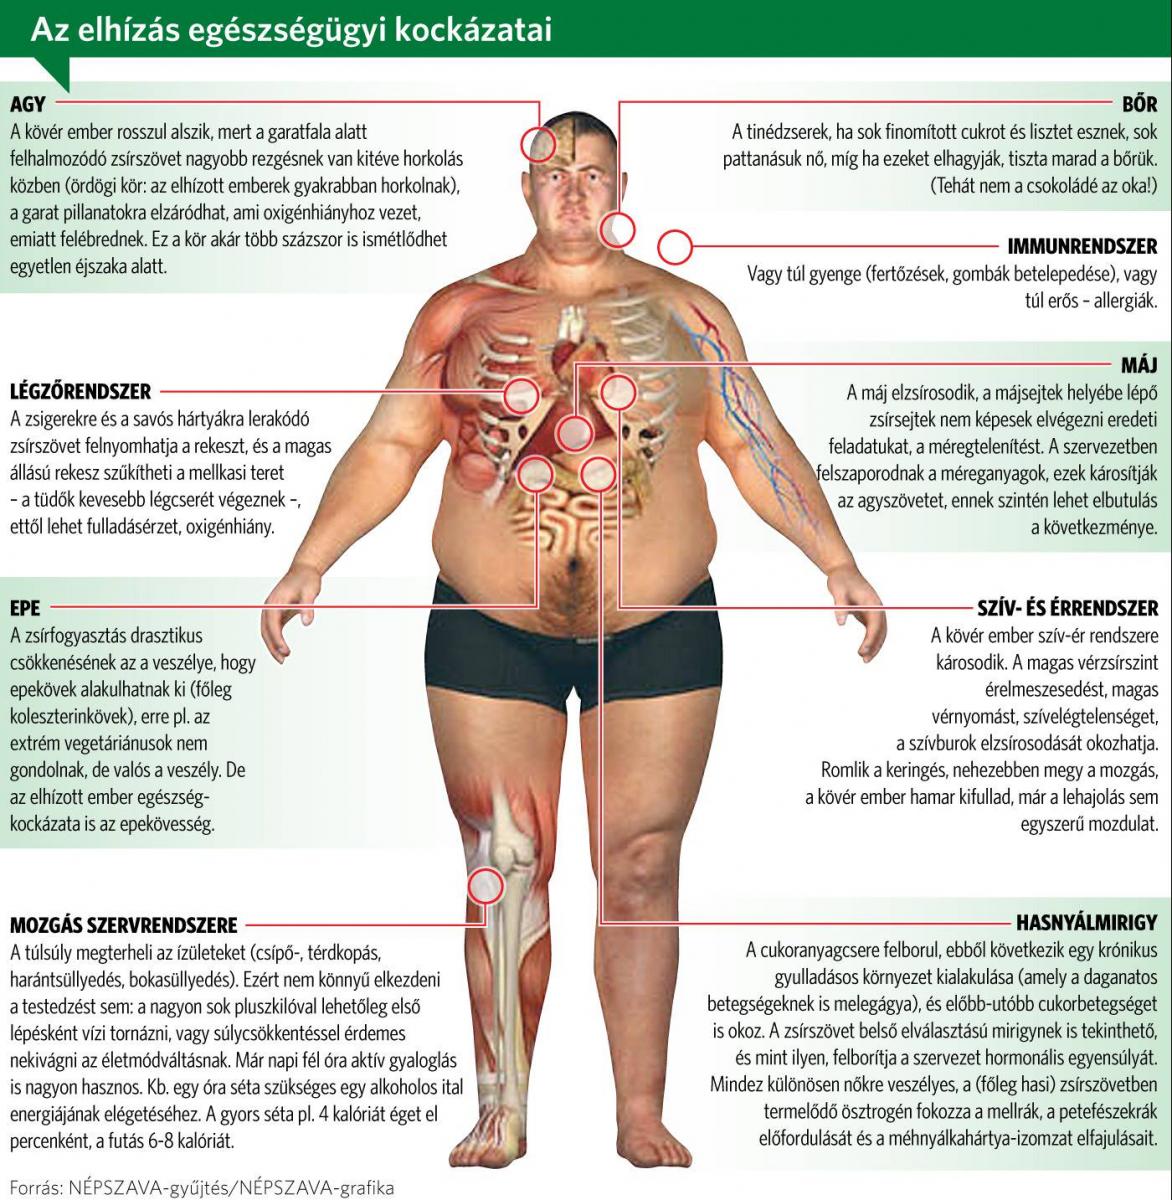 Cukorbetegség és magas vérnyomás együttes előfordulása